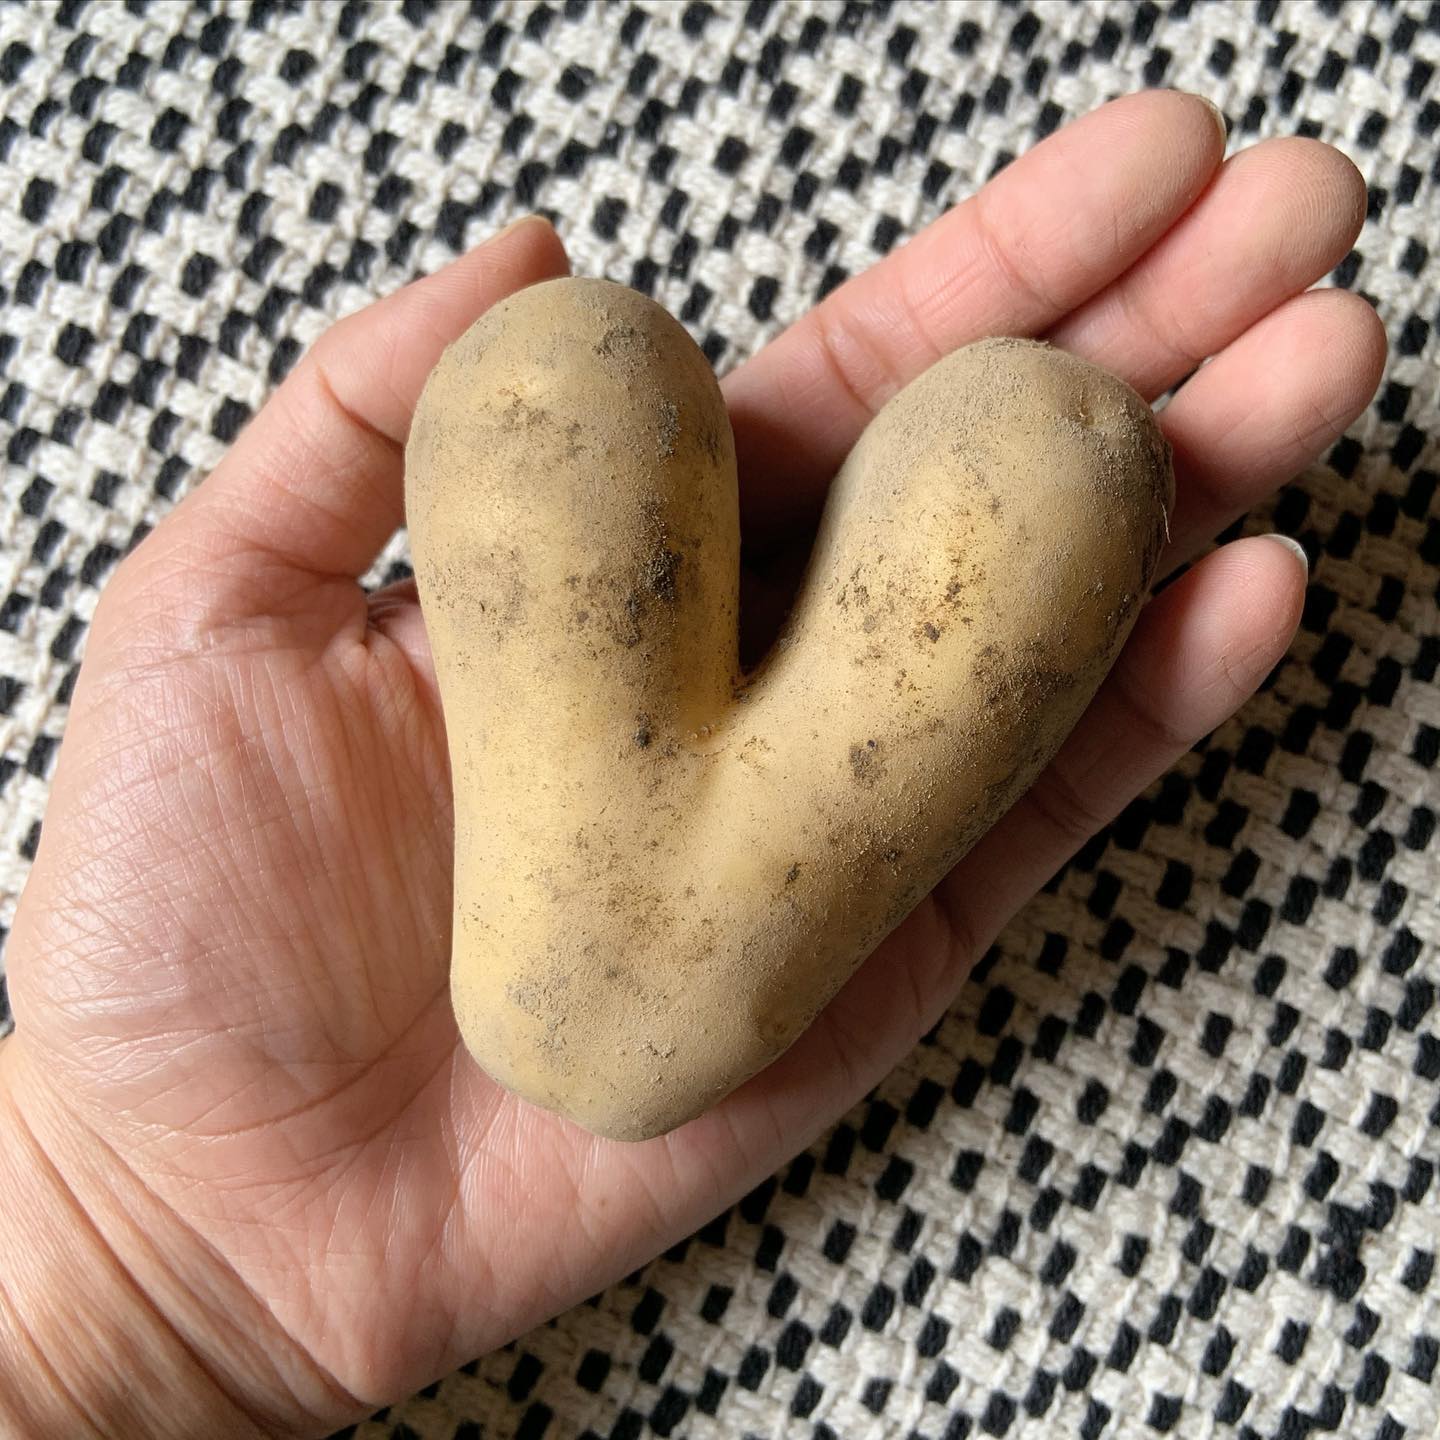 #potato 
#家庭精進料理 #料理教室
#精進スタイルのおうちごはん  【 ♡のジャガイモ 】  いただいたジャガイモの中に
╰(*´︶`*)╯♡  今日も一日幸せです。  皆さんも幸せな一日を♡  #heart #vegtable #photo #plantbased #healthyfood #happy #happiness #vegan #shojincuisine #lovely #lucky 
#精進料理 #ジャガイモ #ハート #ハート型
#ハッピー #ラッキー #ギフト #野菜 #写真 
#ささやかな幸せ #季節を楽しむ #丁寧な暮らし 
#萩市 #古民家暮らし #お福分け